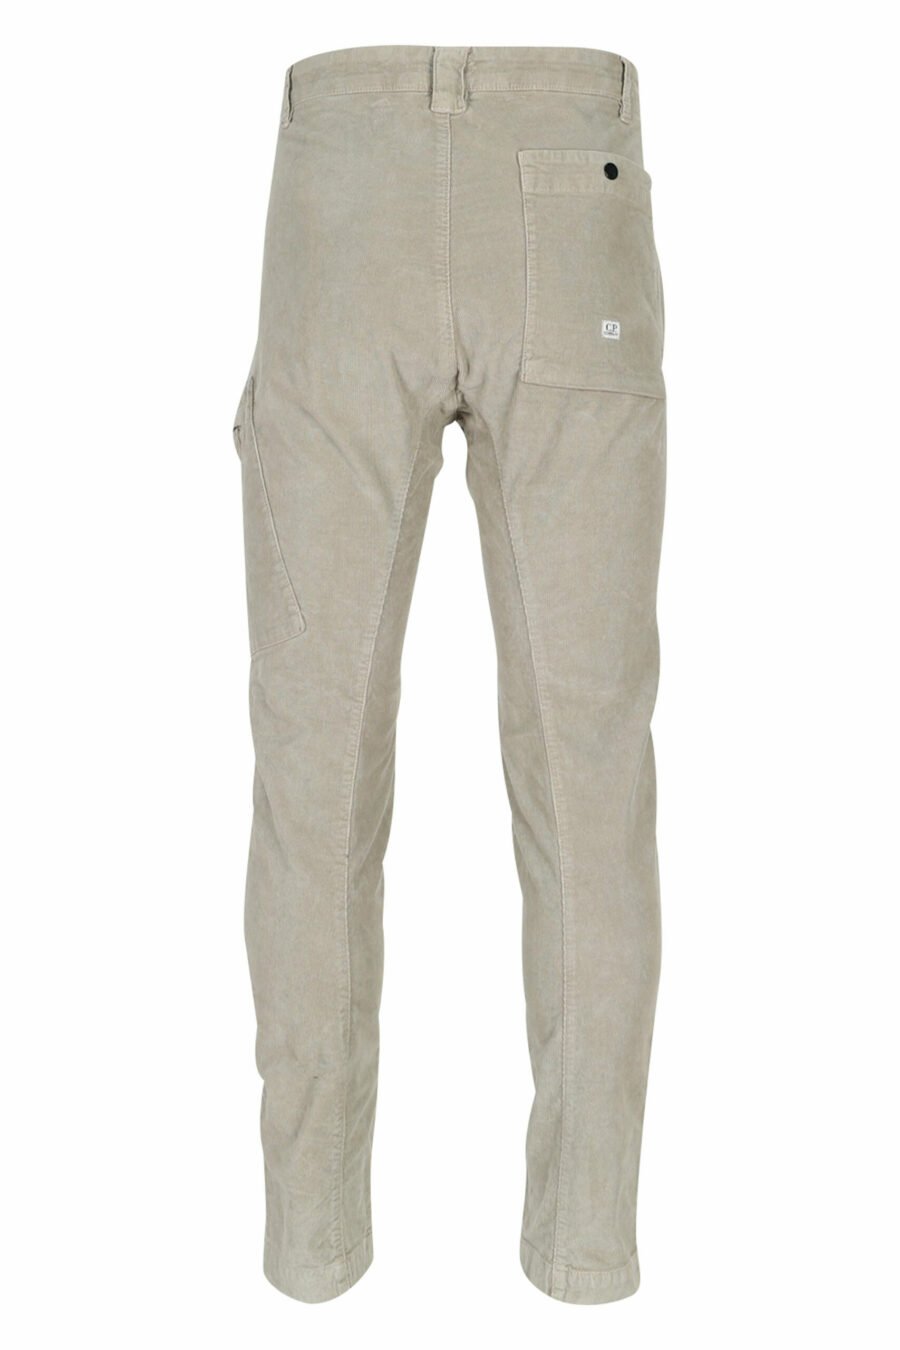 Pantalón de pana beige con bolsillo lateral y logo lente - 7620943650518 3 scaled